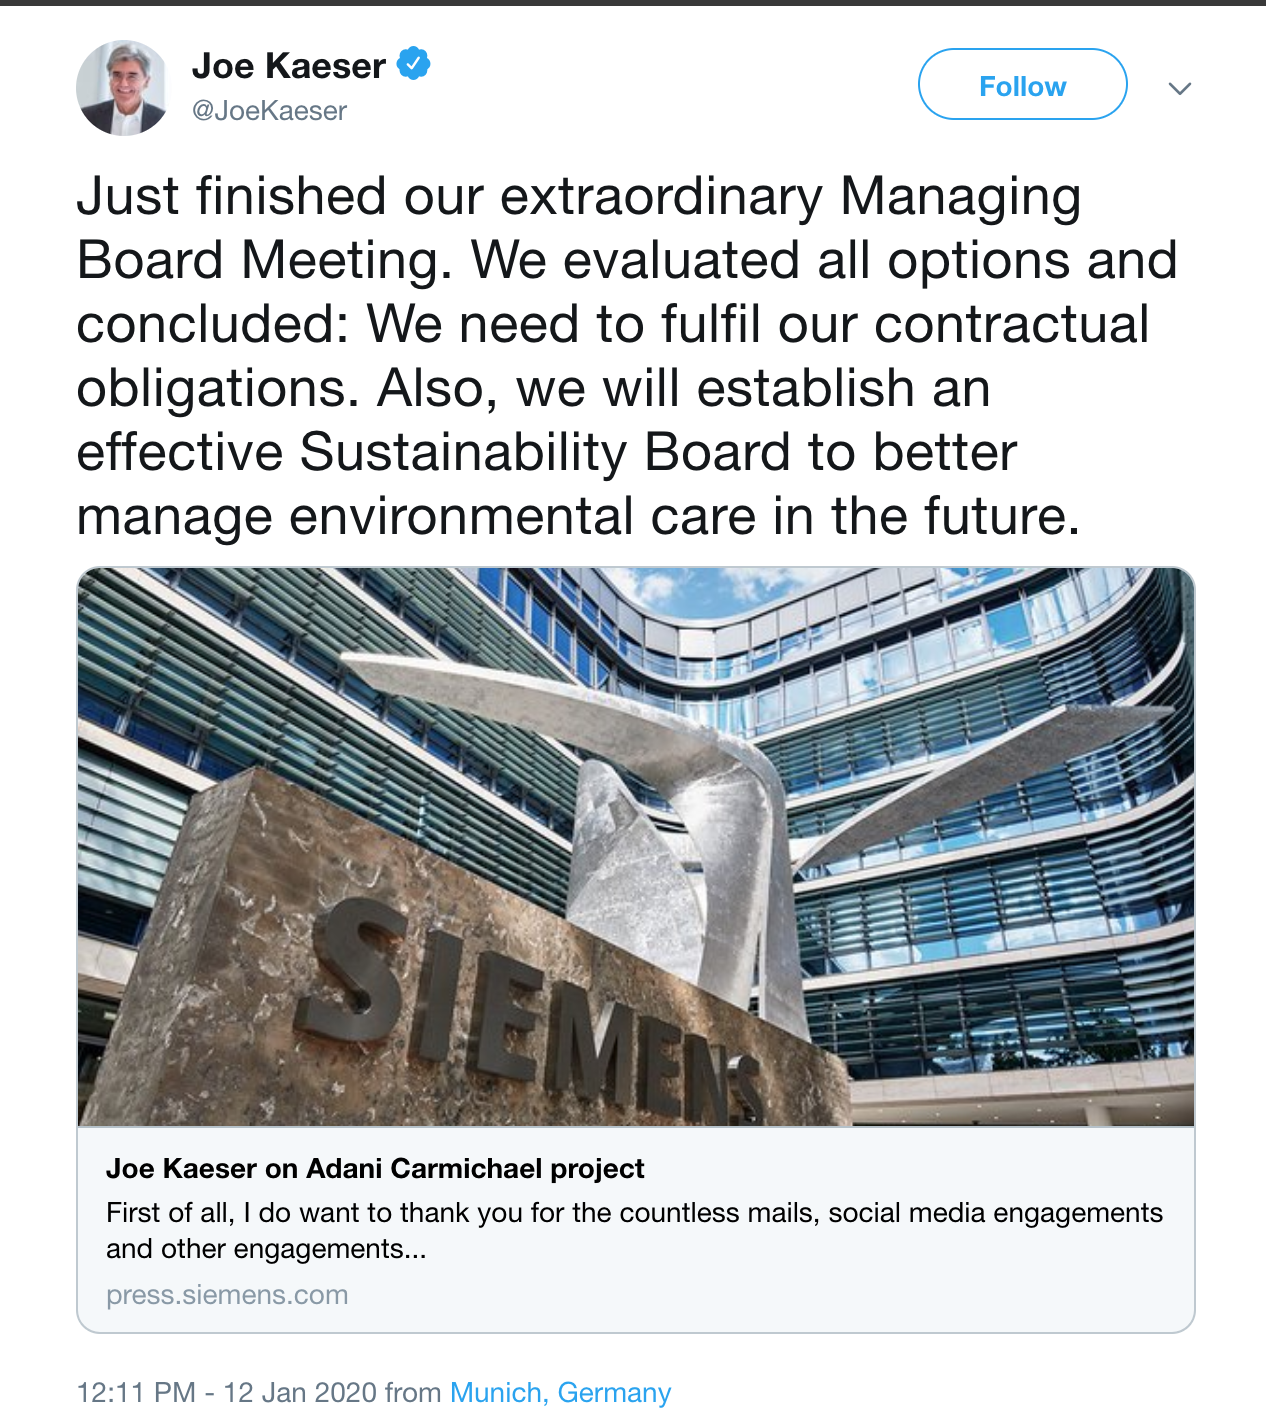 Twitter post of Siemen's CEO